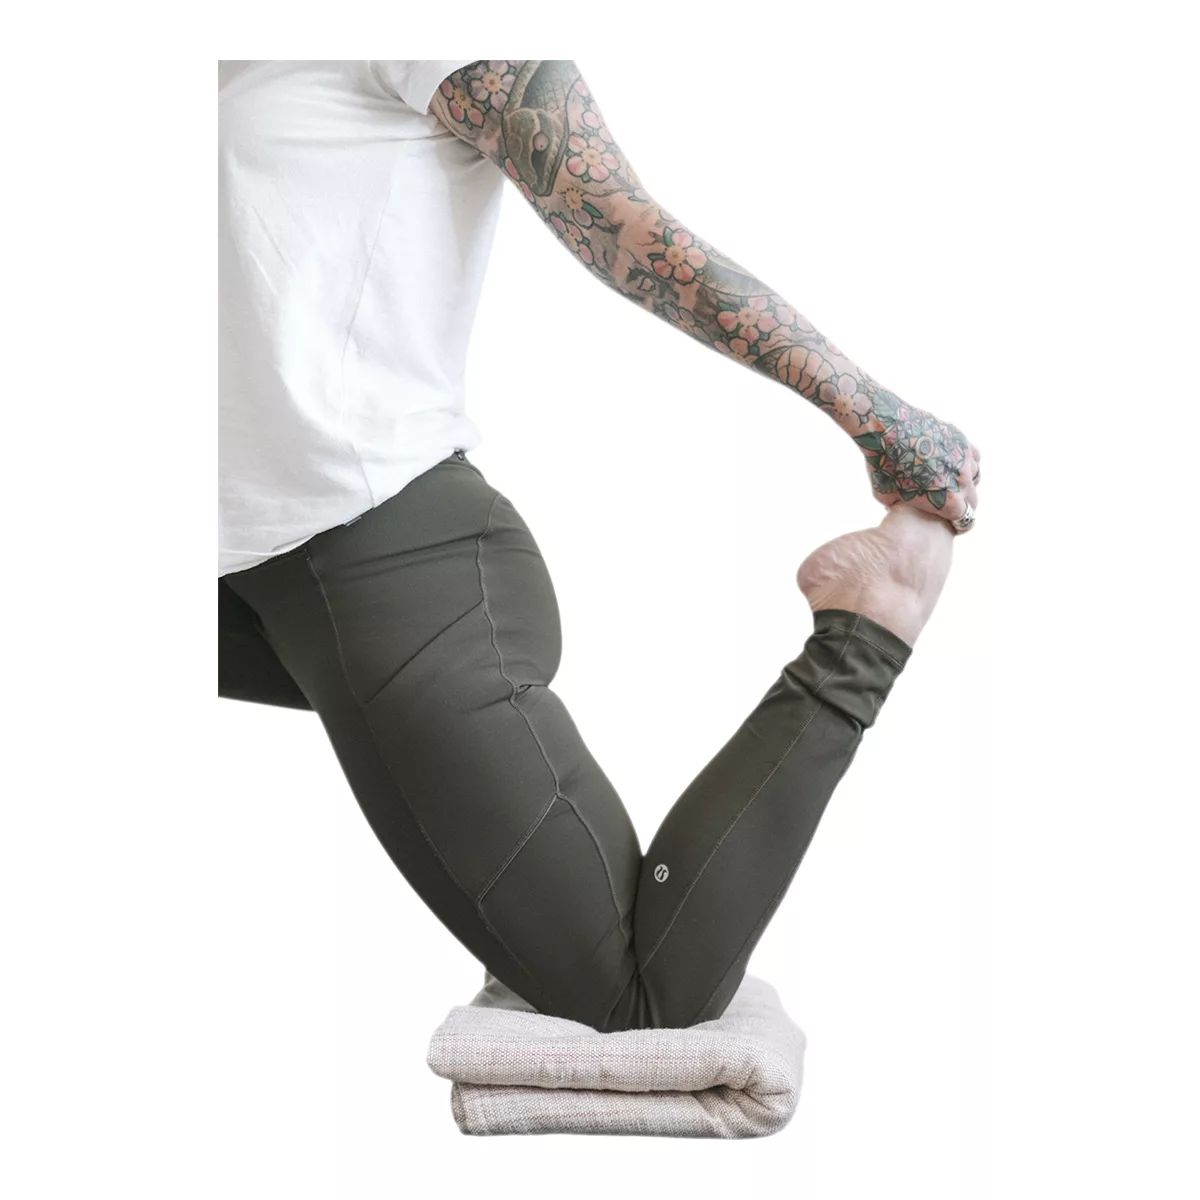 Yoga Cloth - Cotton/Spandex Knit - Black - Stonemountain